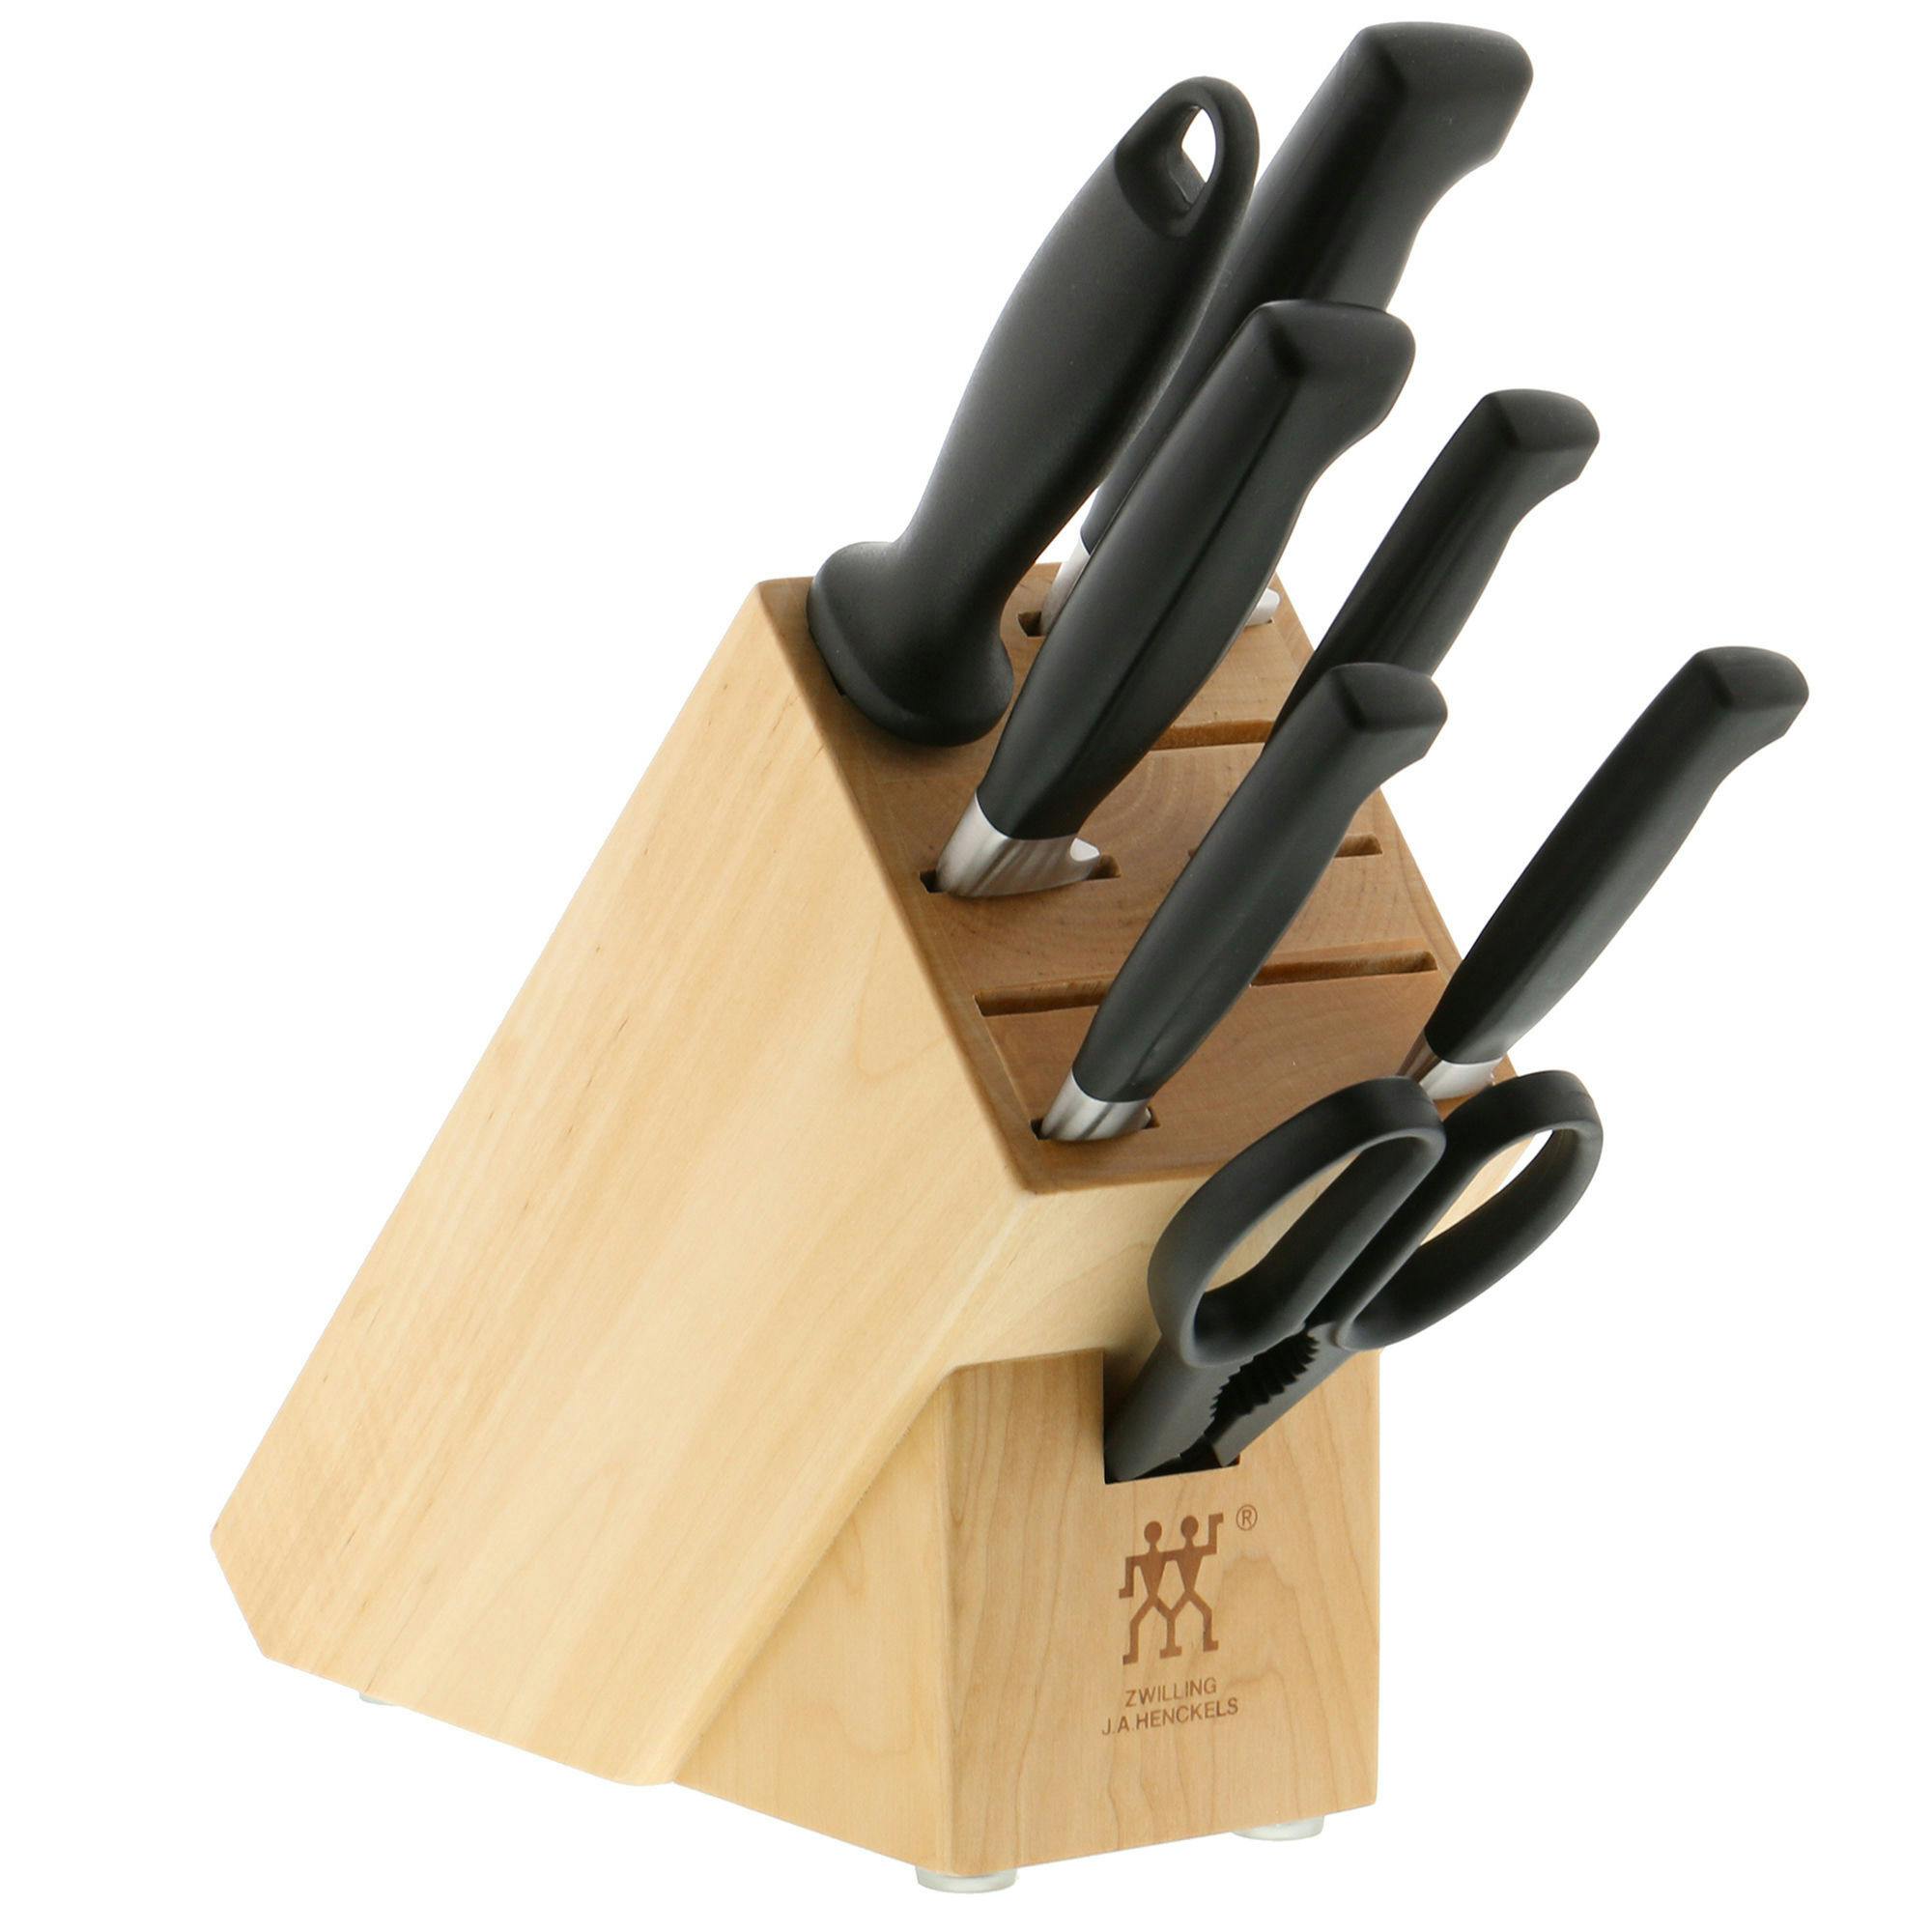 Anolon 8-Piece Knife Block Set in Black